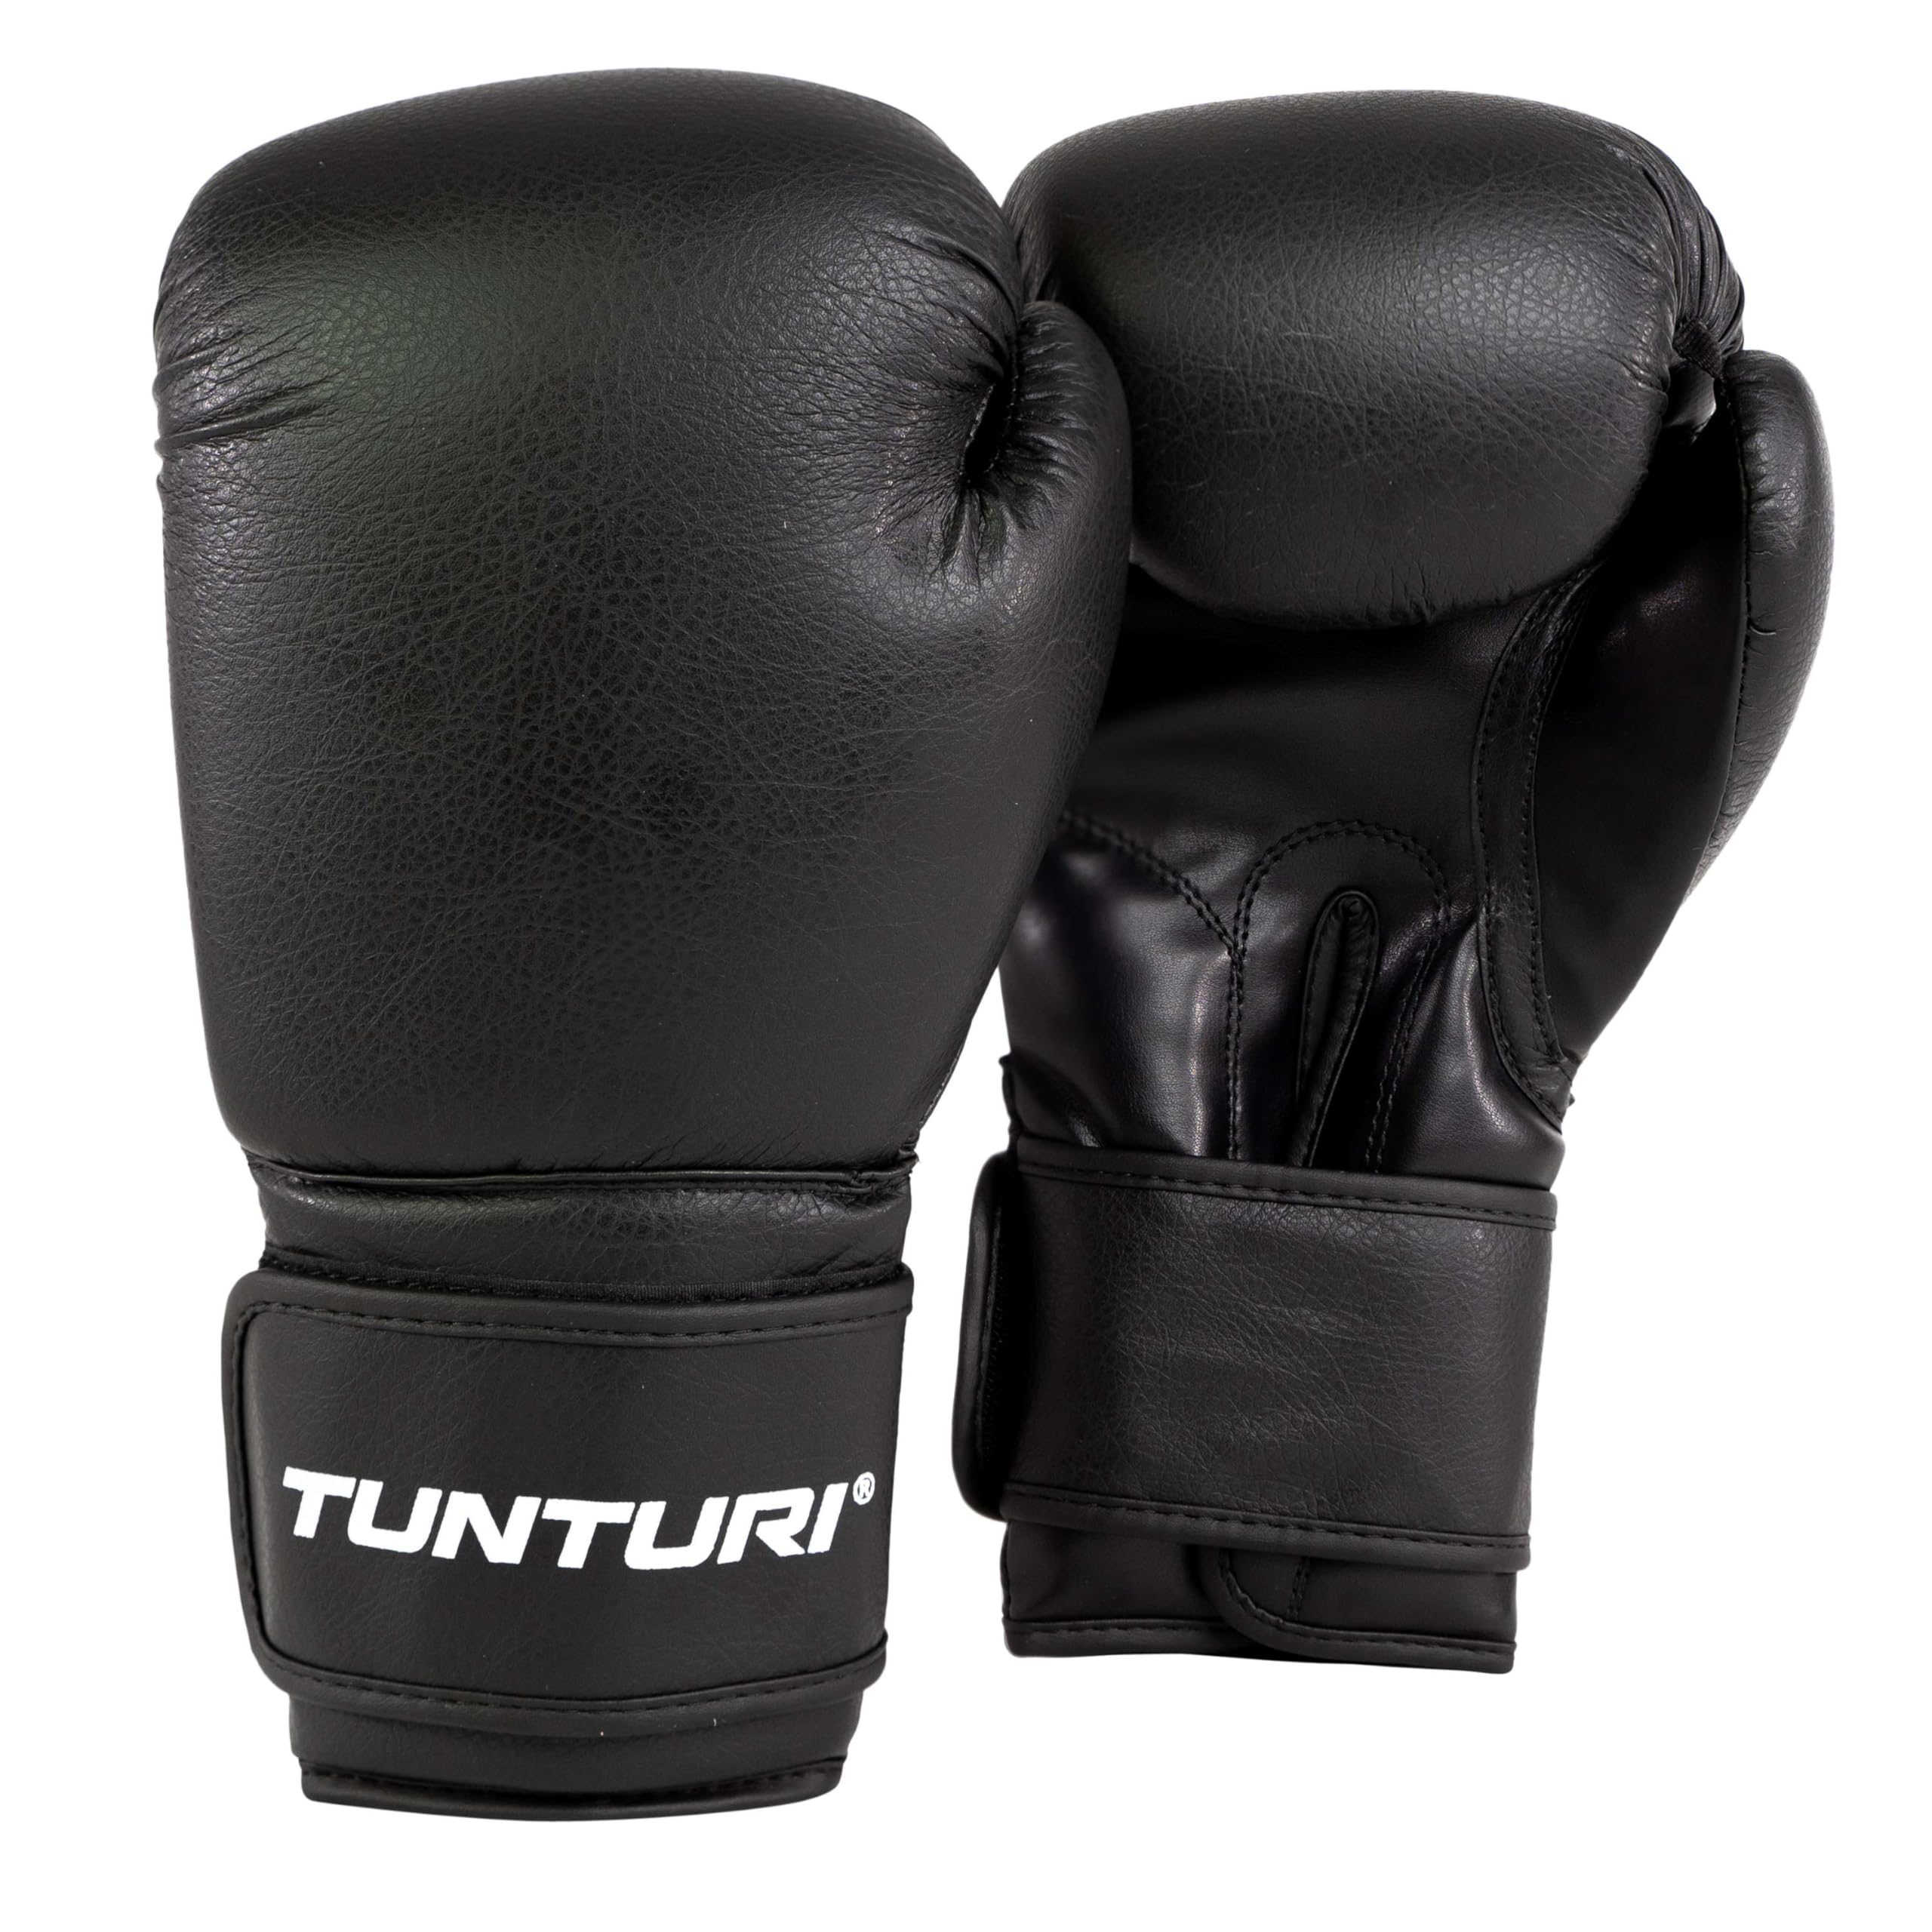 Tunturi Allround Boxhandschuhe 14oz - Geeignet für Boxsack Training - Boxing Gloves für Verschiedene Kampfsportarten, Boxen, Kickboxen, Muay Thai - Sparring - Extra steifes PU-Material